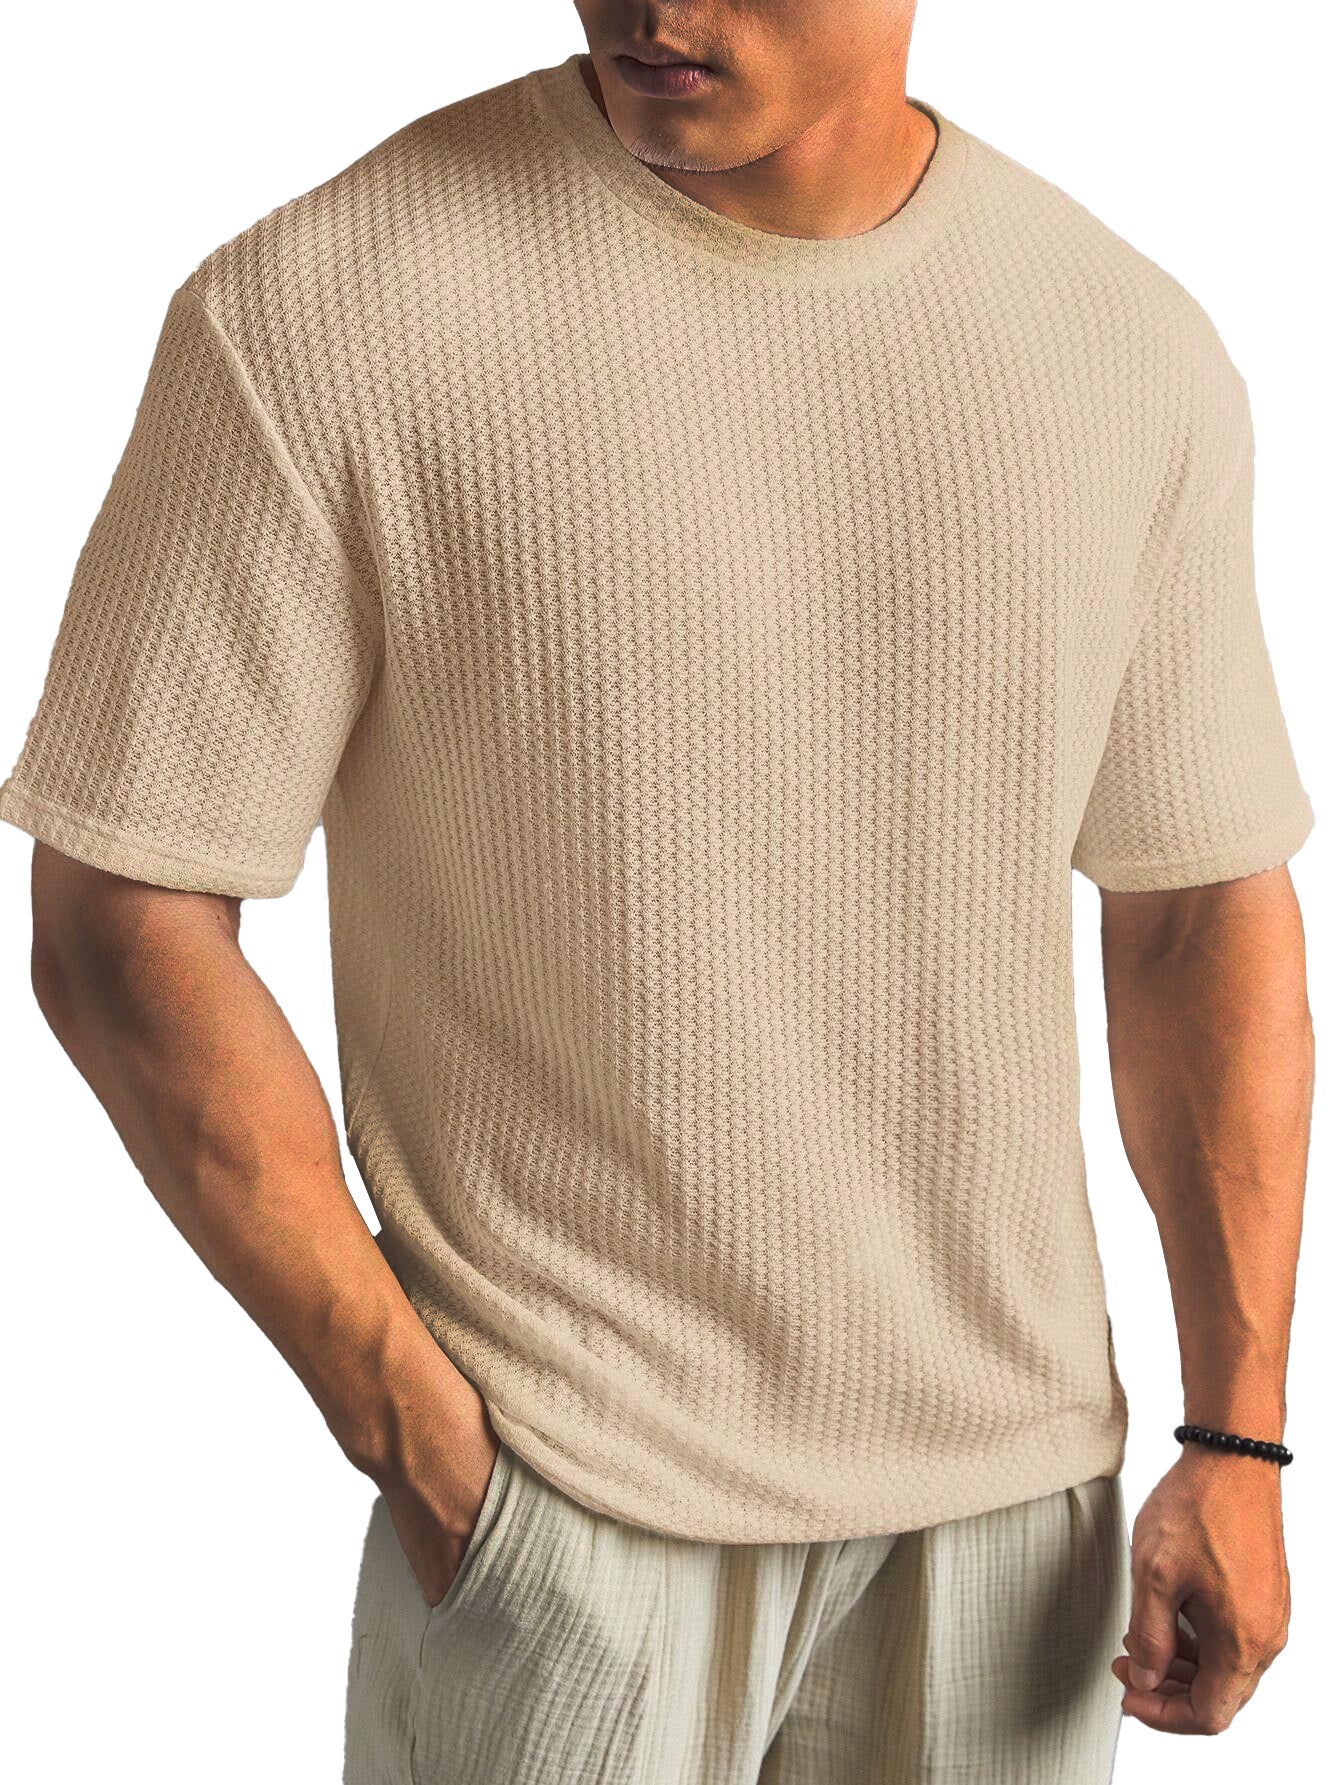 Men's Fashionable Basic Round Neck Short Sleeve T-Shirt